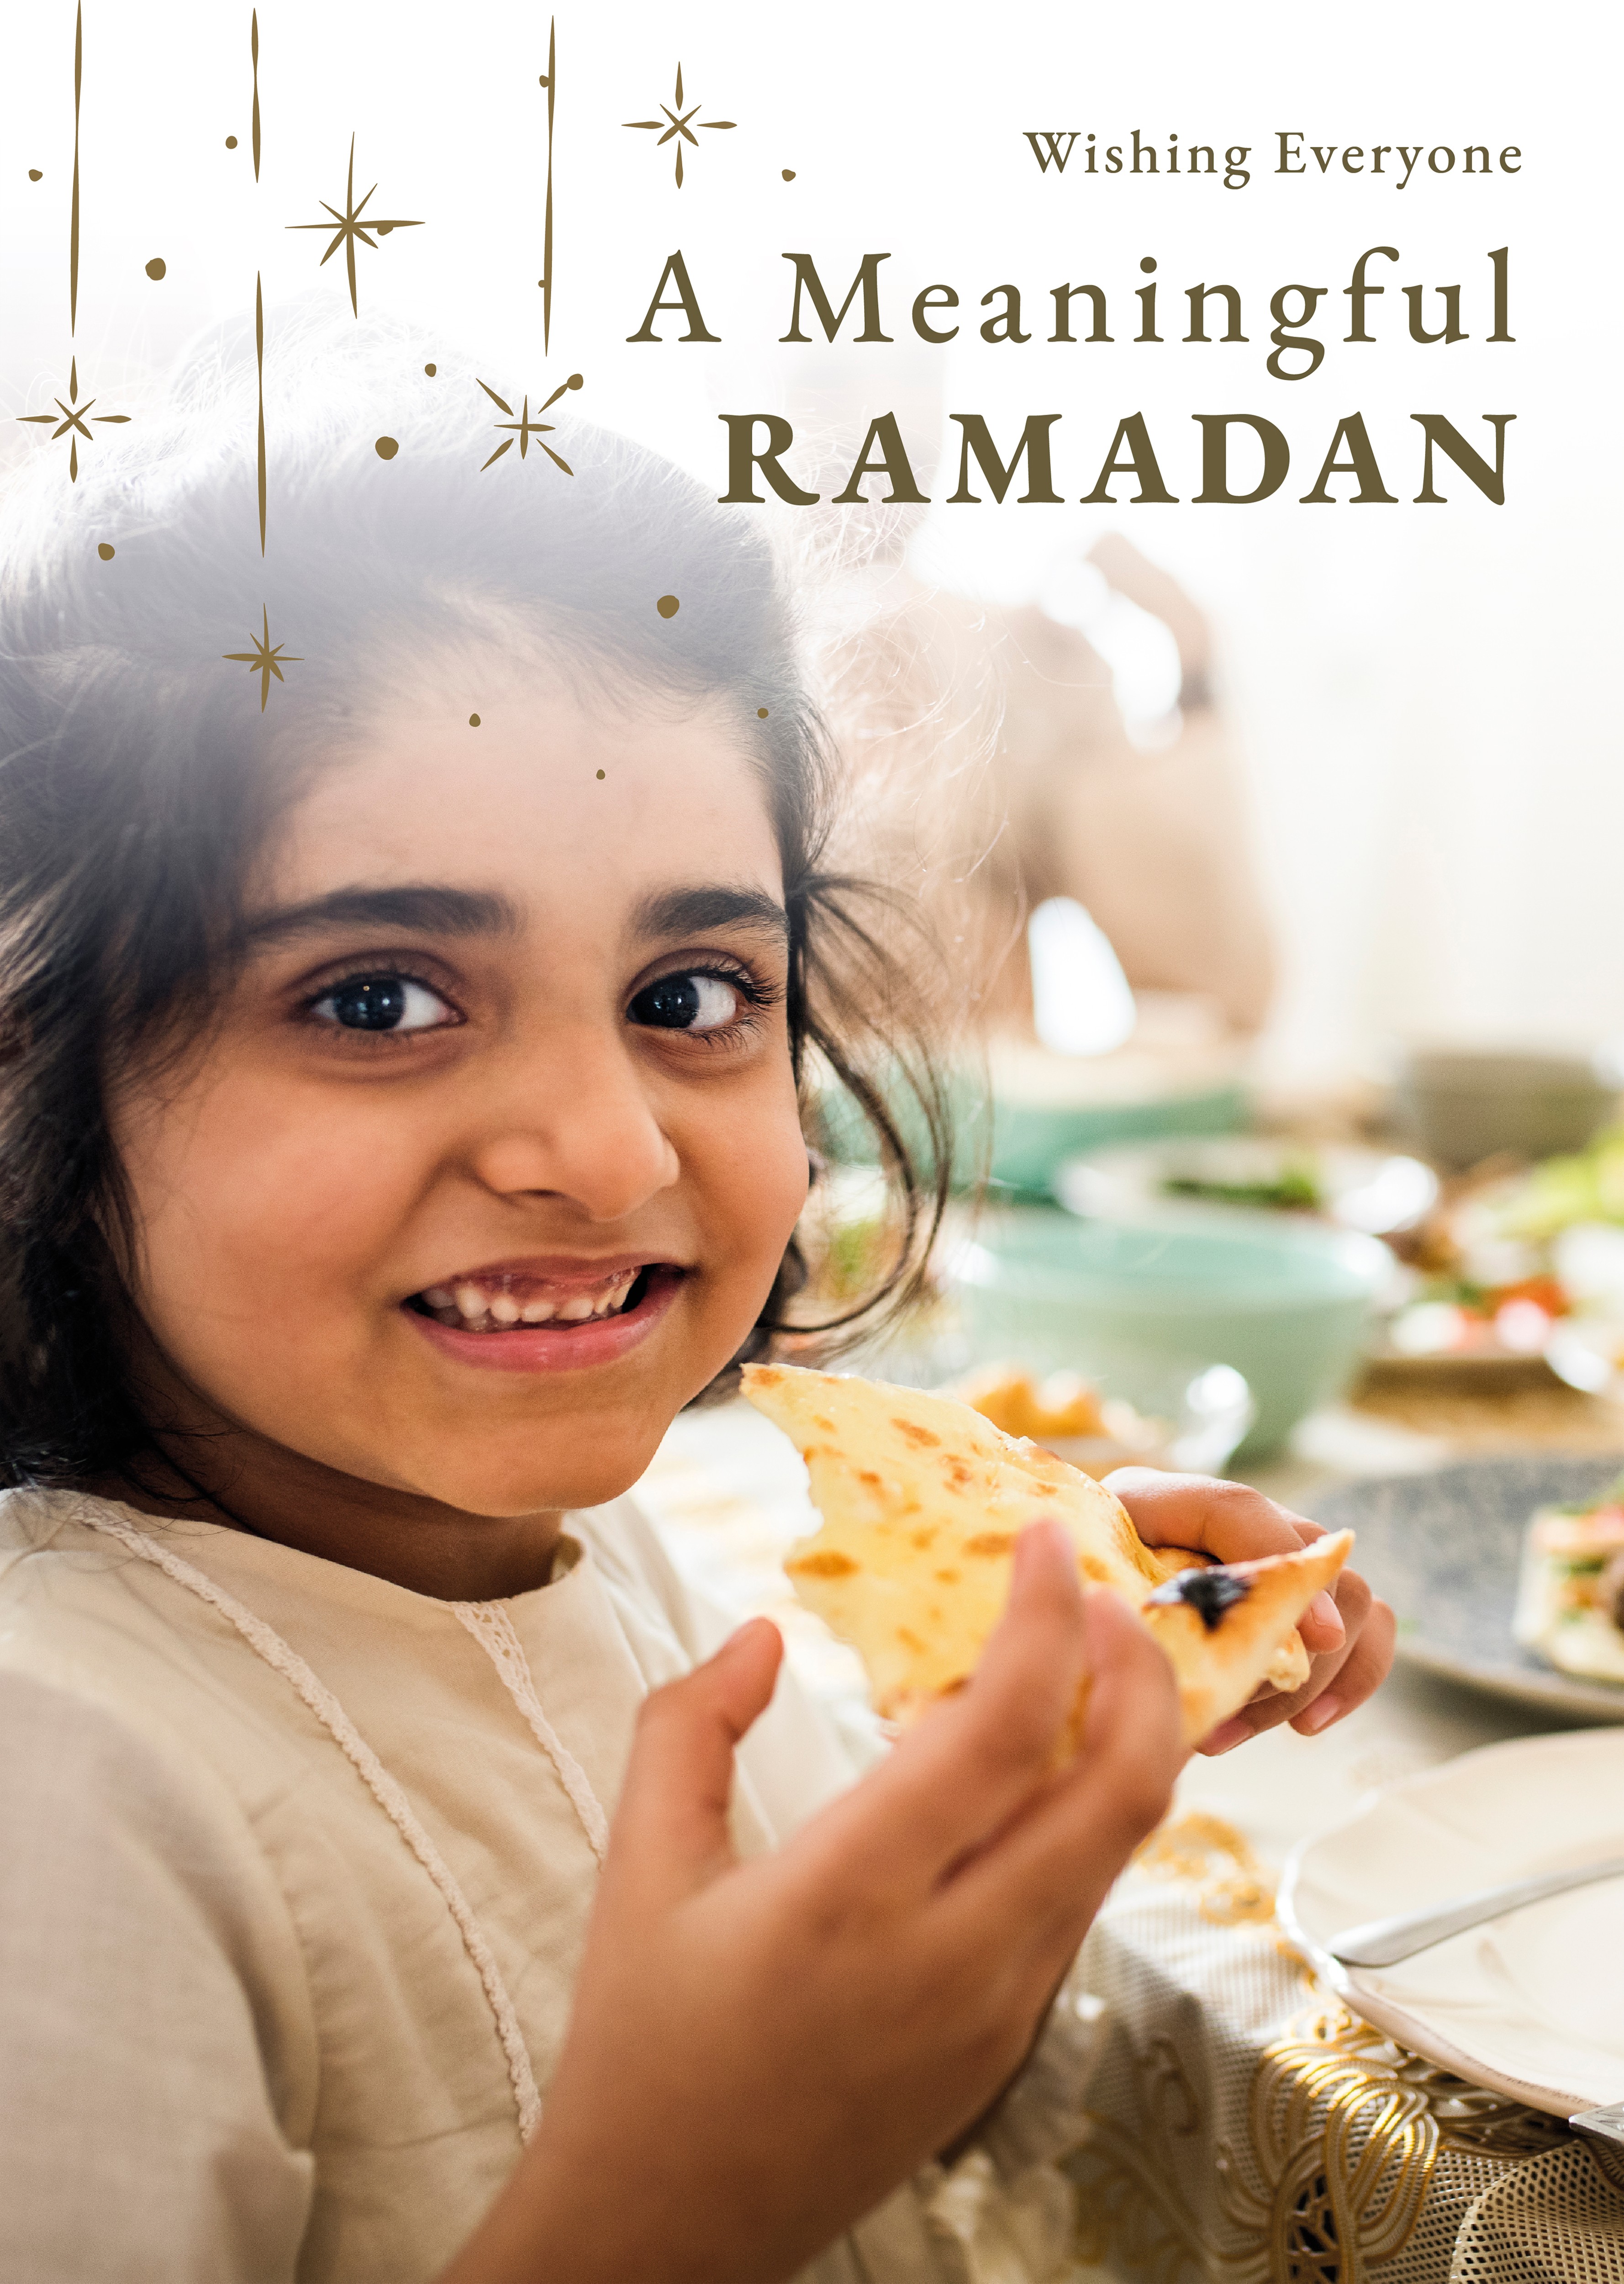 ramadan-holy-month-greeting-poster.jpg